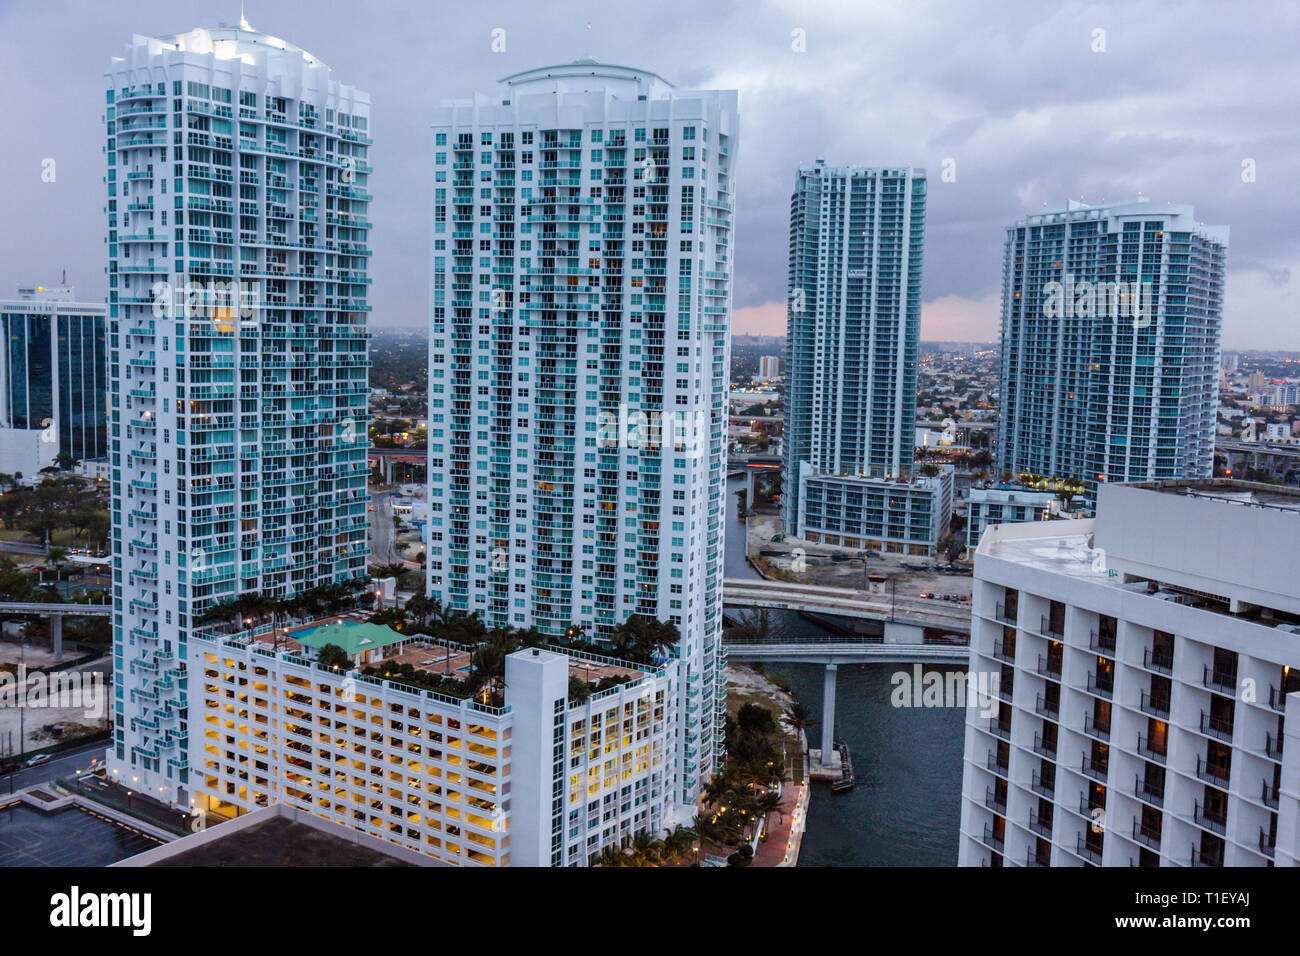 Miami Florida, Blick vom Epic, Hotel, Miami River, neue Wohnanlagen, Wolkenkratzer, Hochhäuser, Gebäude, Skyline der Stadt, Türme, Balkone, Luxus, FL090322072 Stockfoto